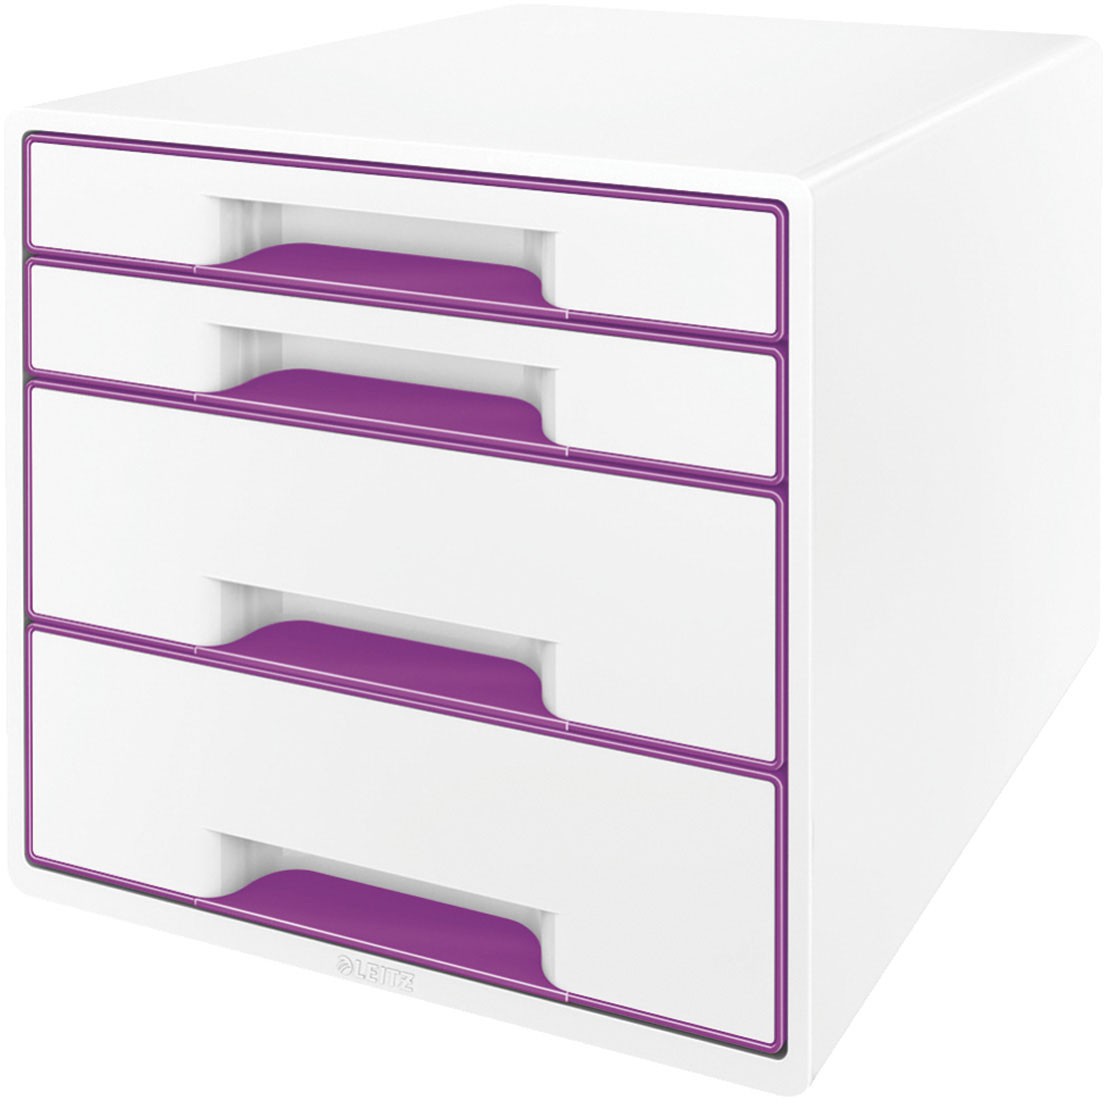 Leitz WOW CUBE skuffekabinet med 4 skuffer i farven violet metallic